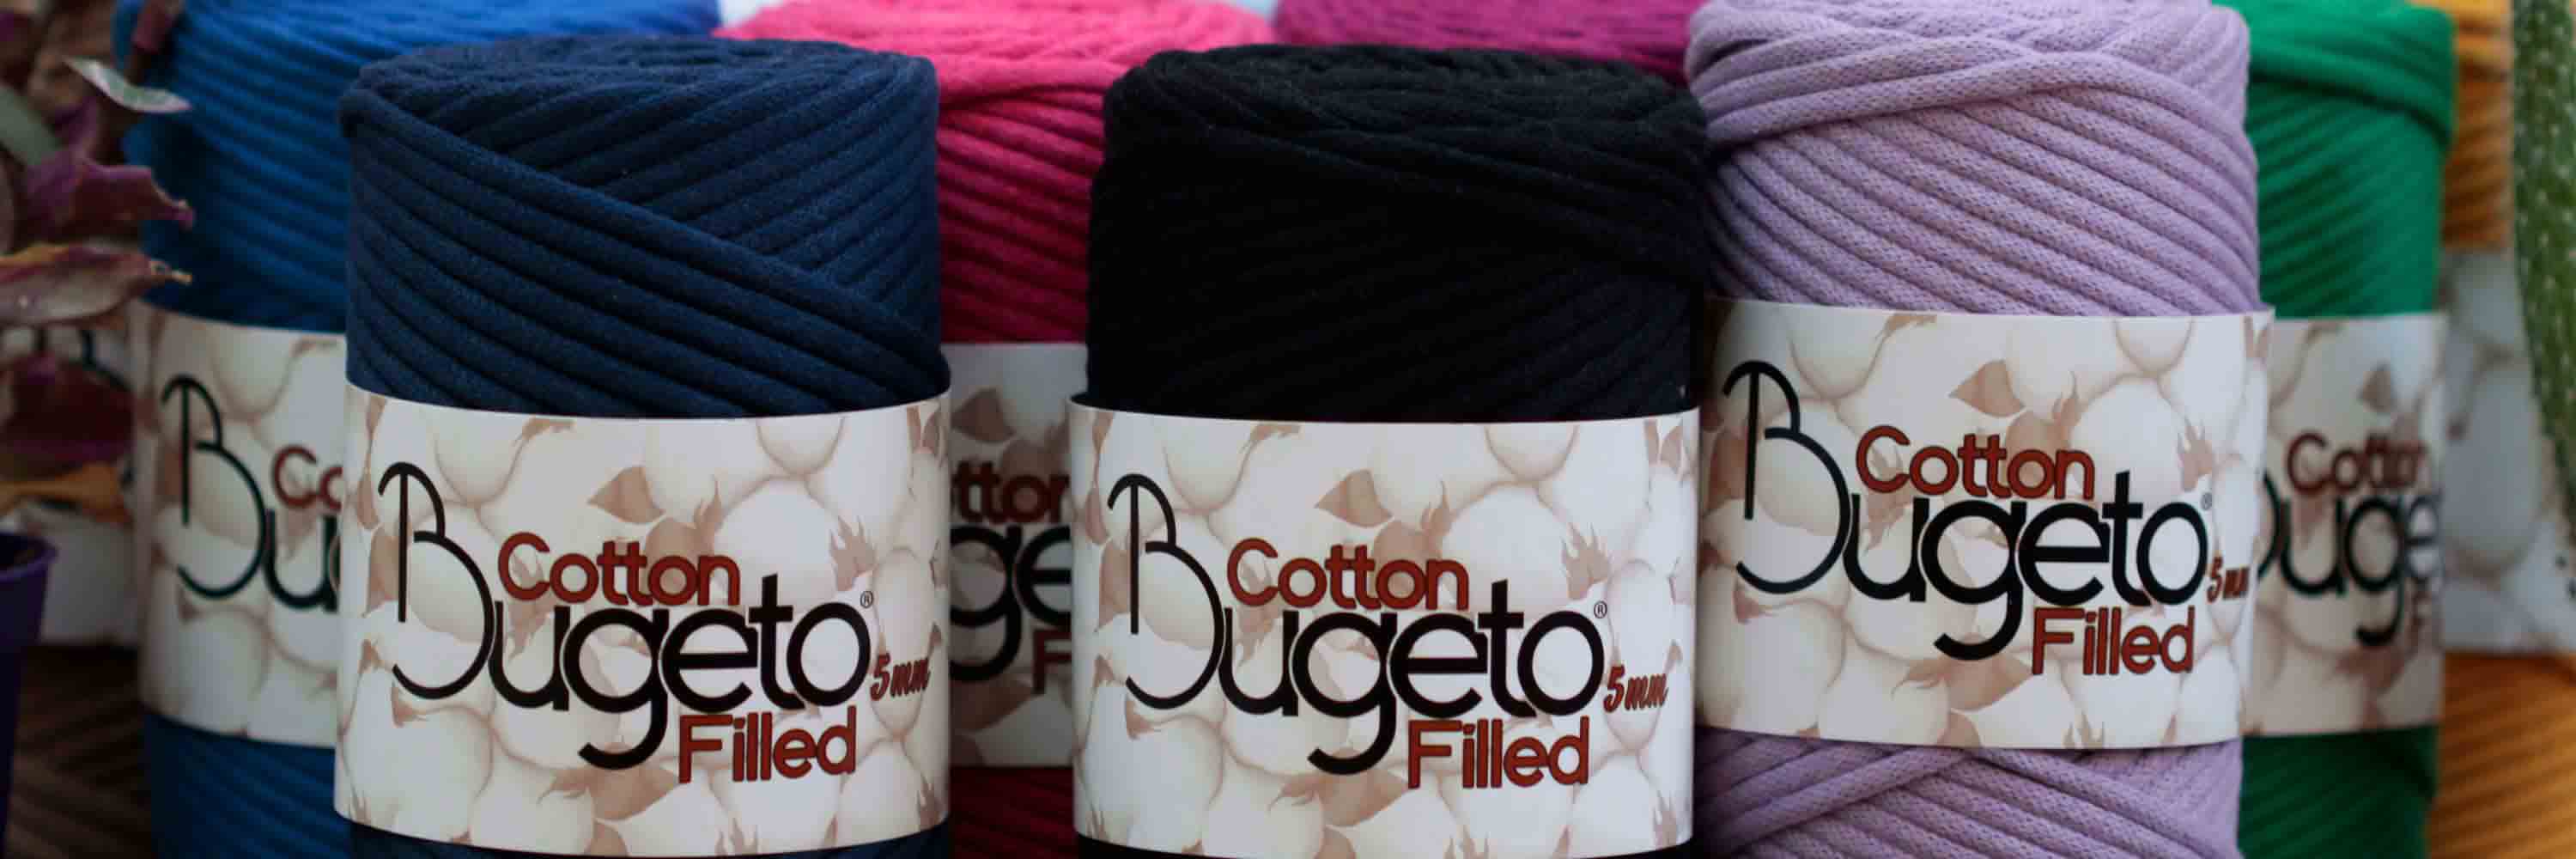 cotton filled yarns 5mm yarns bugeto yarn